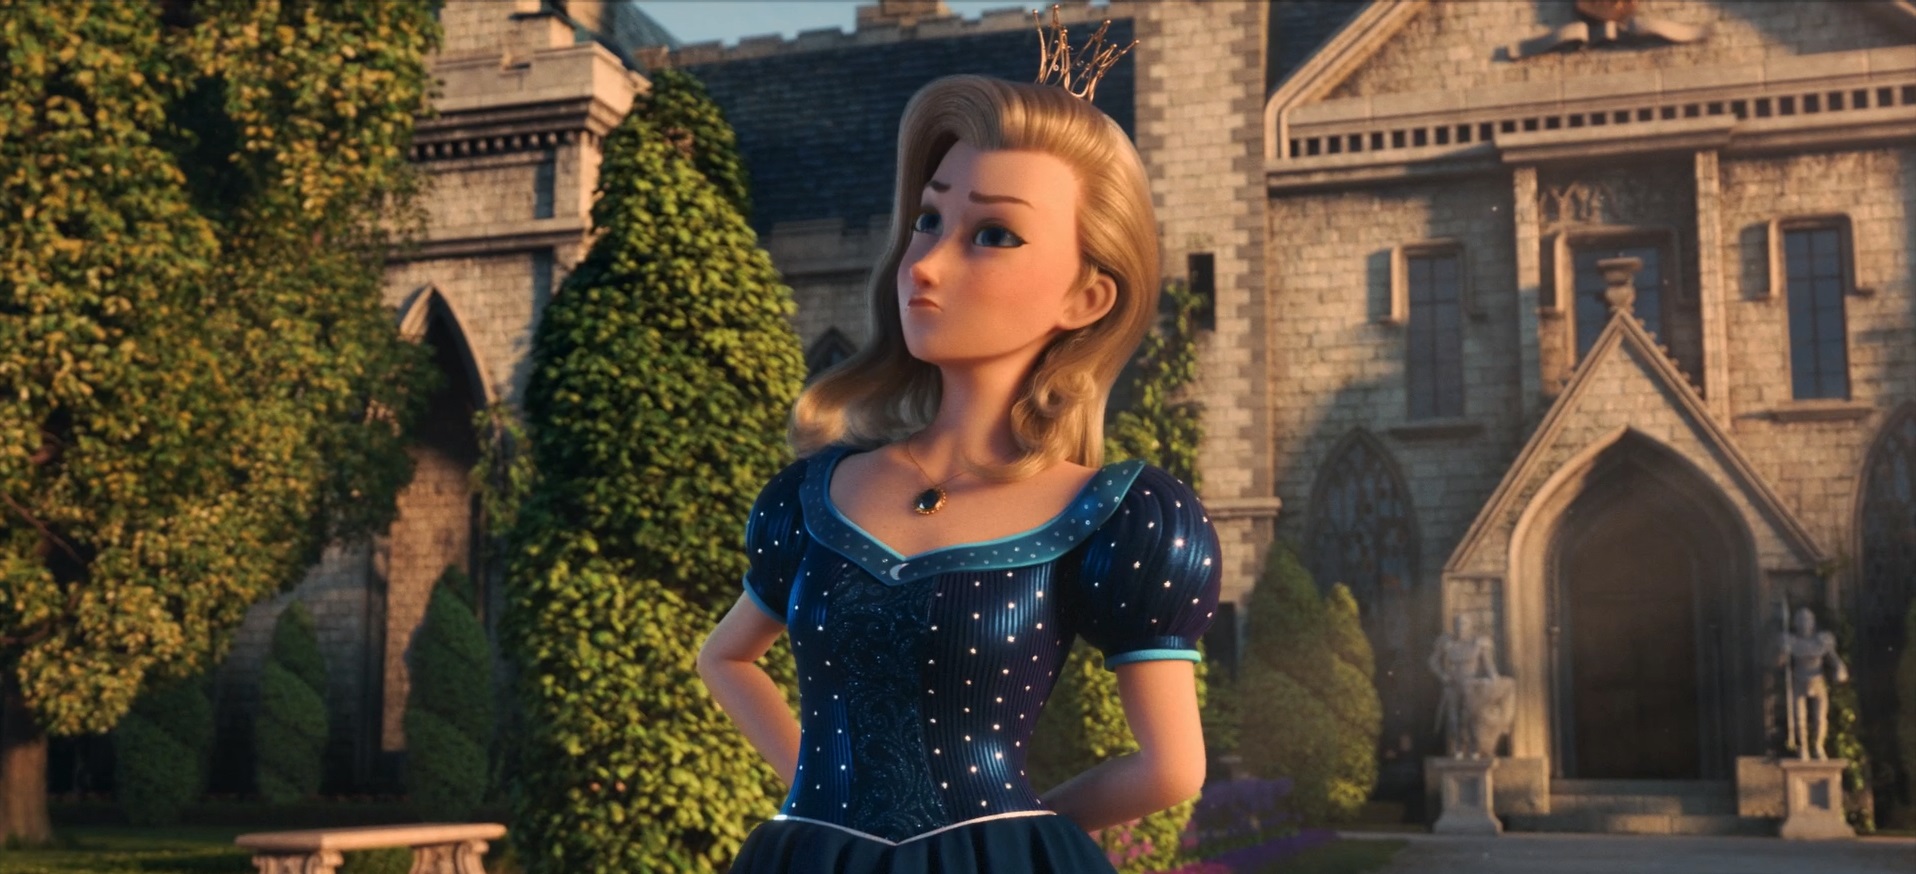 Hrdá klasická česká princezna bude znovu představena prostřednictvím 3D animace